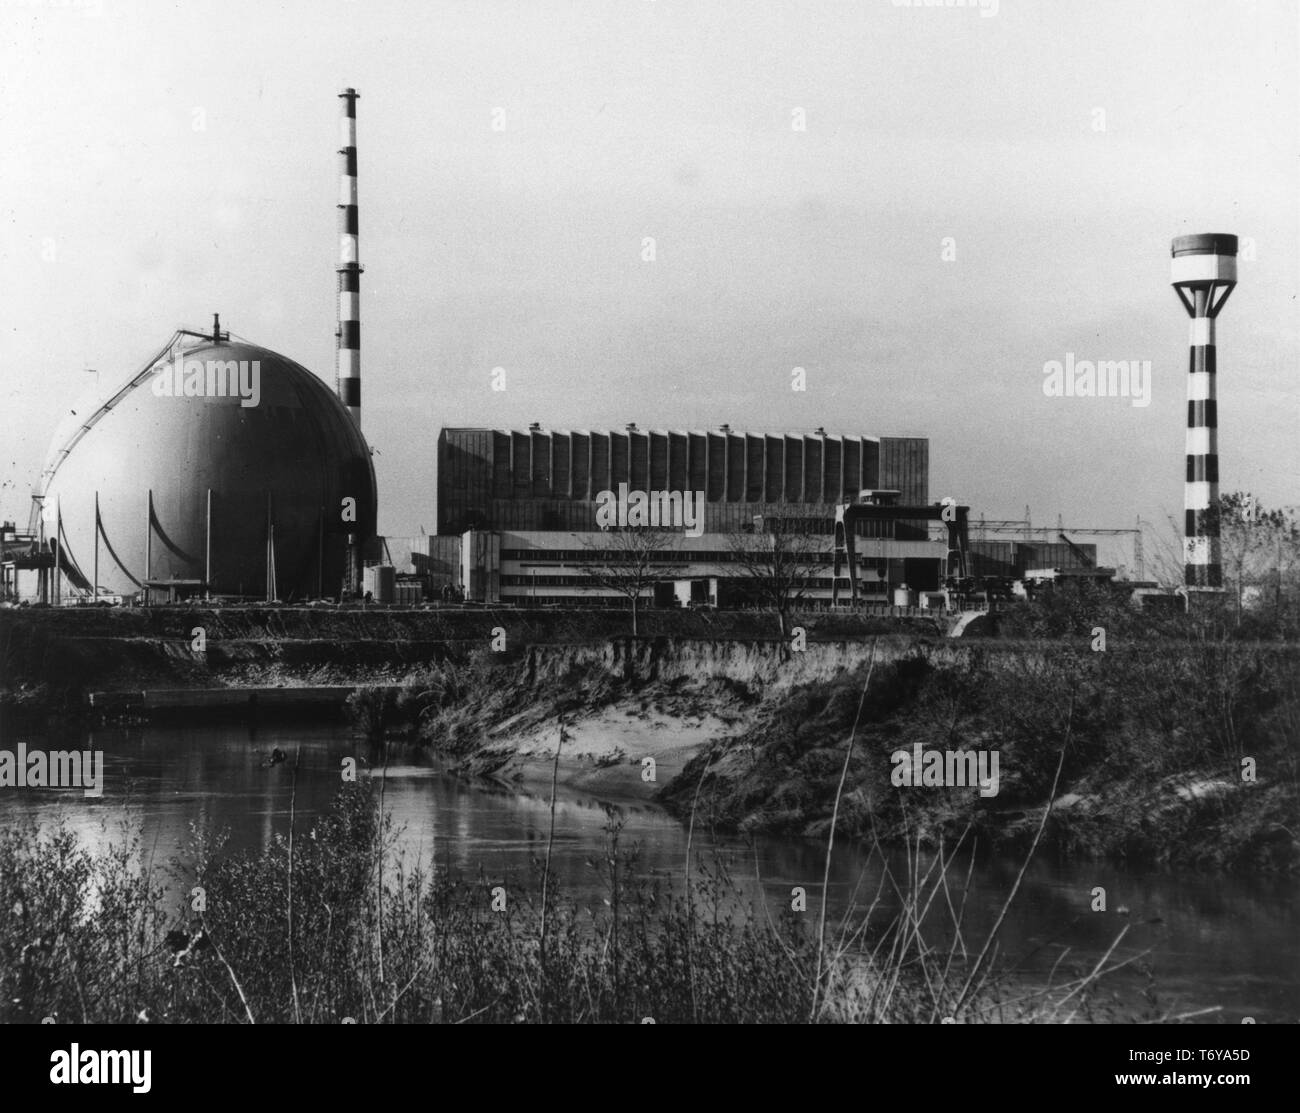 Weite Einstellung des Garigliano Nuclear power plant, errichtet und von SOCIET SENN Elettronucleare Nazionale SpA (SpA) mit dem Fluss Garigliano im Vordergrund, Neapel, Italien, 1967 betrieben. Mit freundlicher Genehmigung des US-Ministeriums für Energie. () Stockfoto